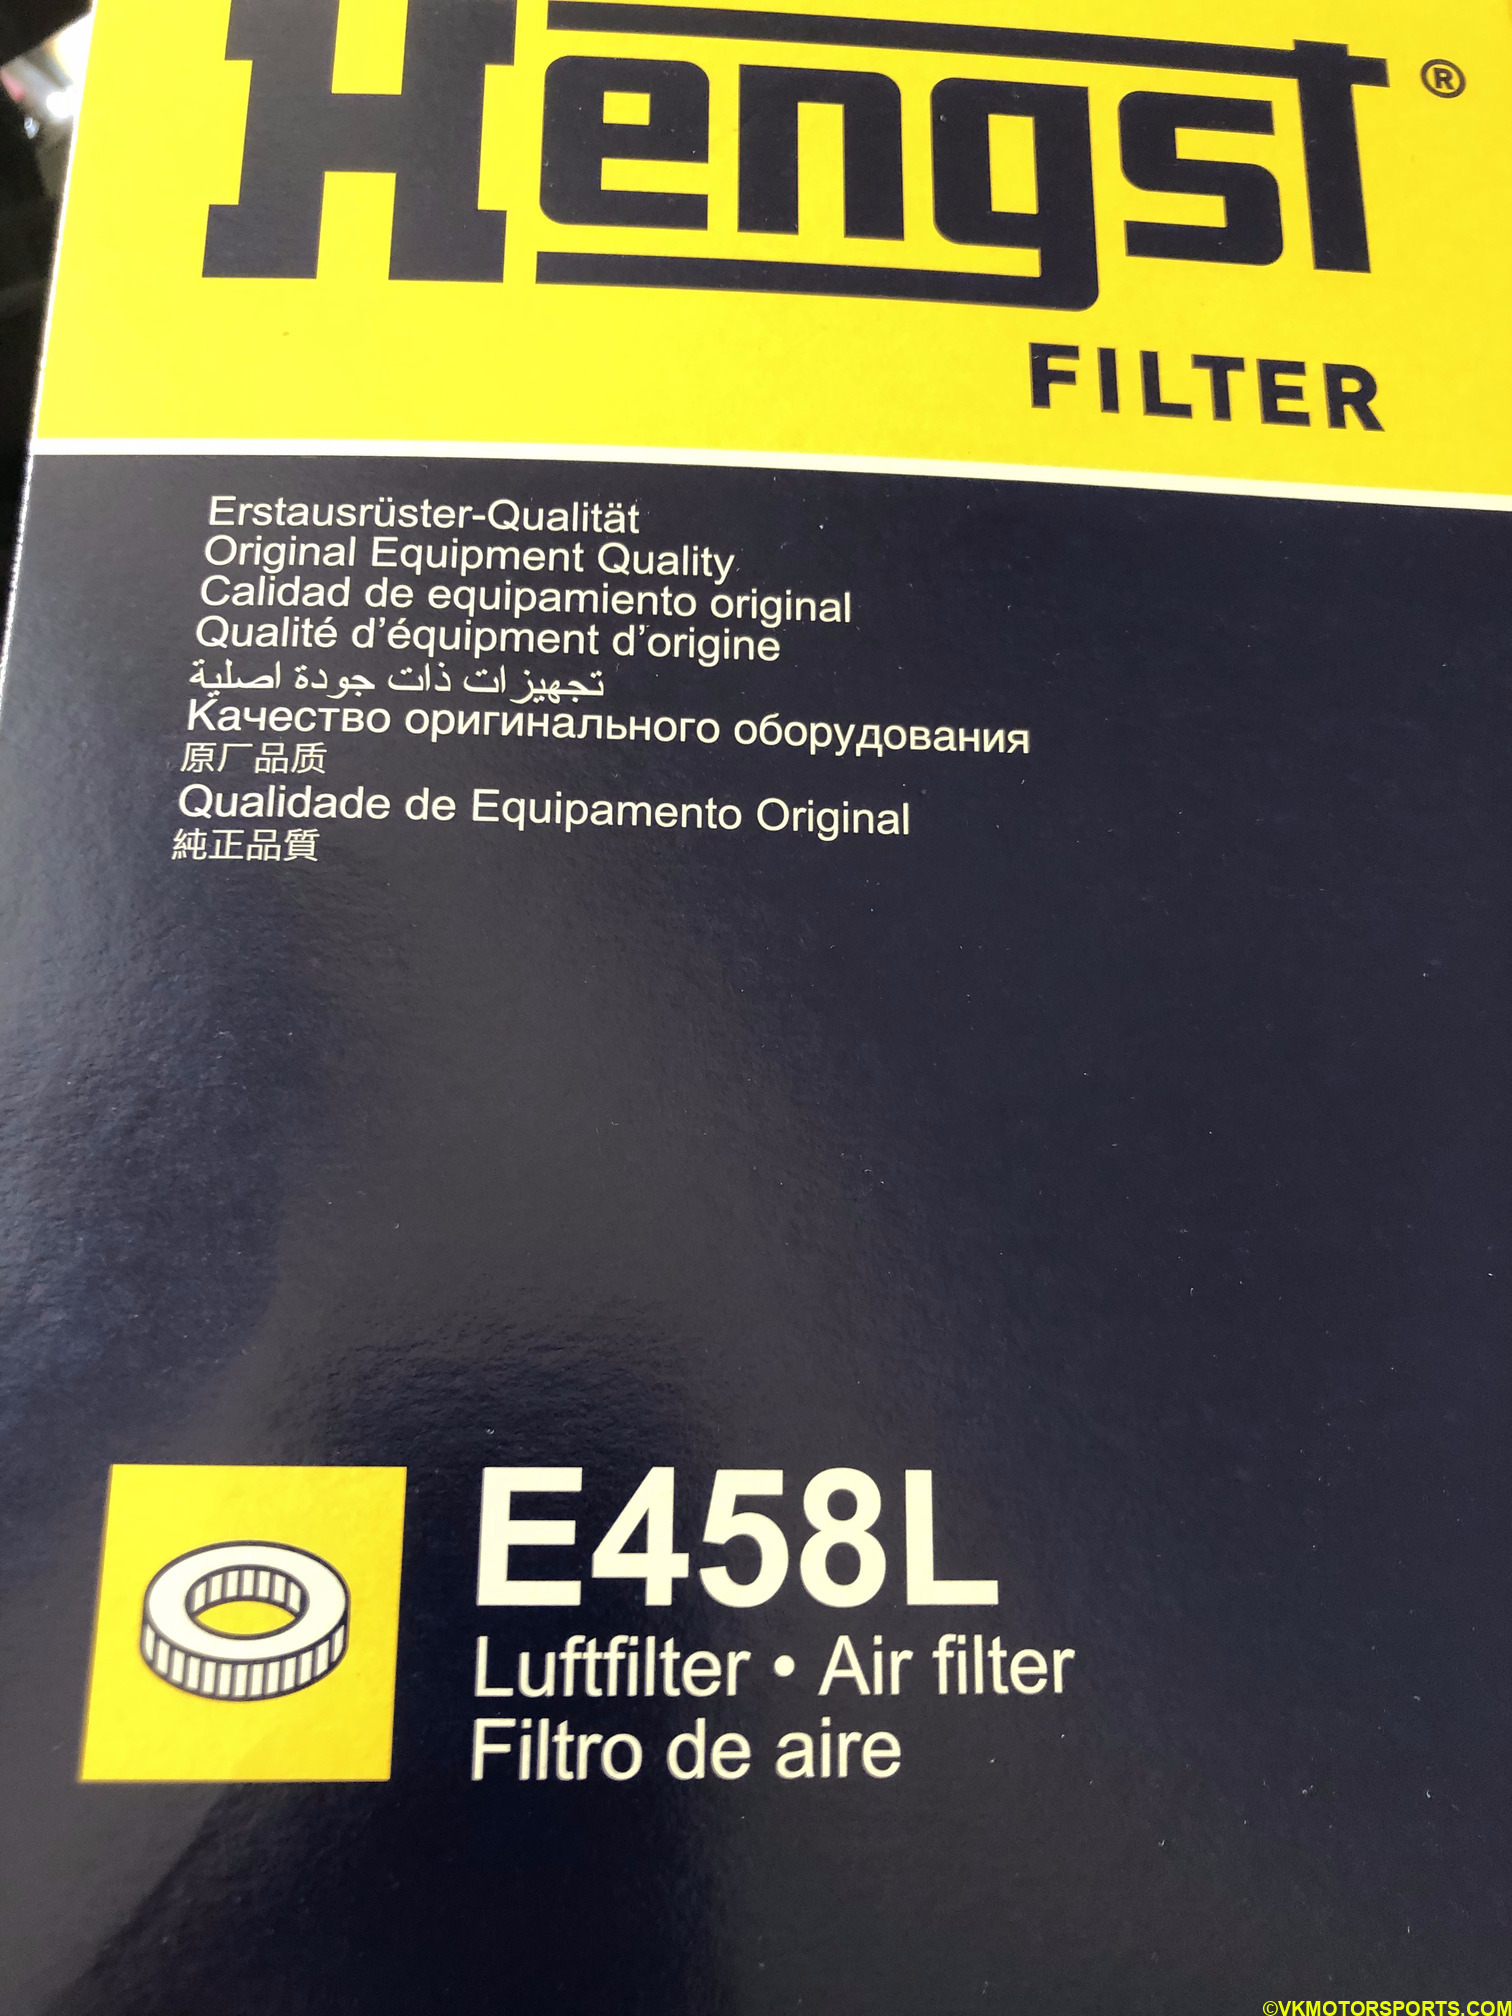 Figure 14. Hengst Air Filter E458L